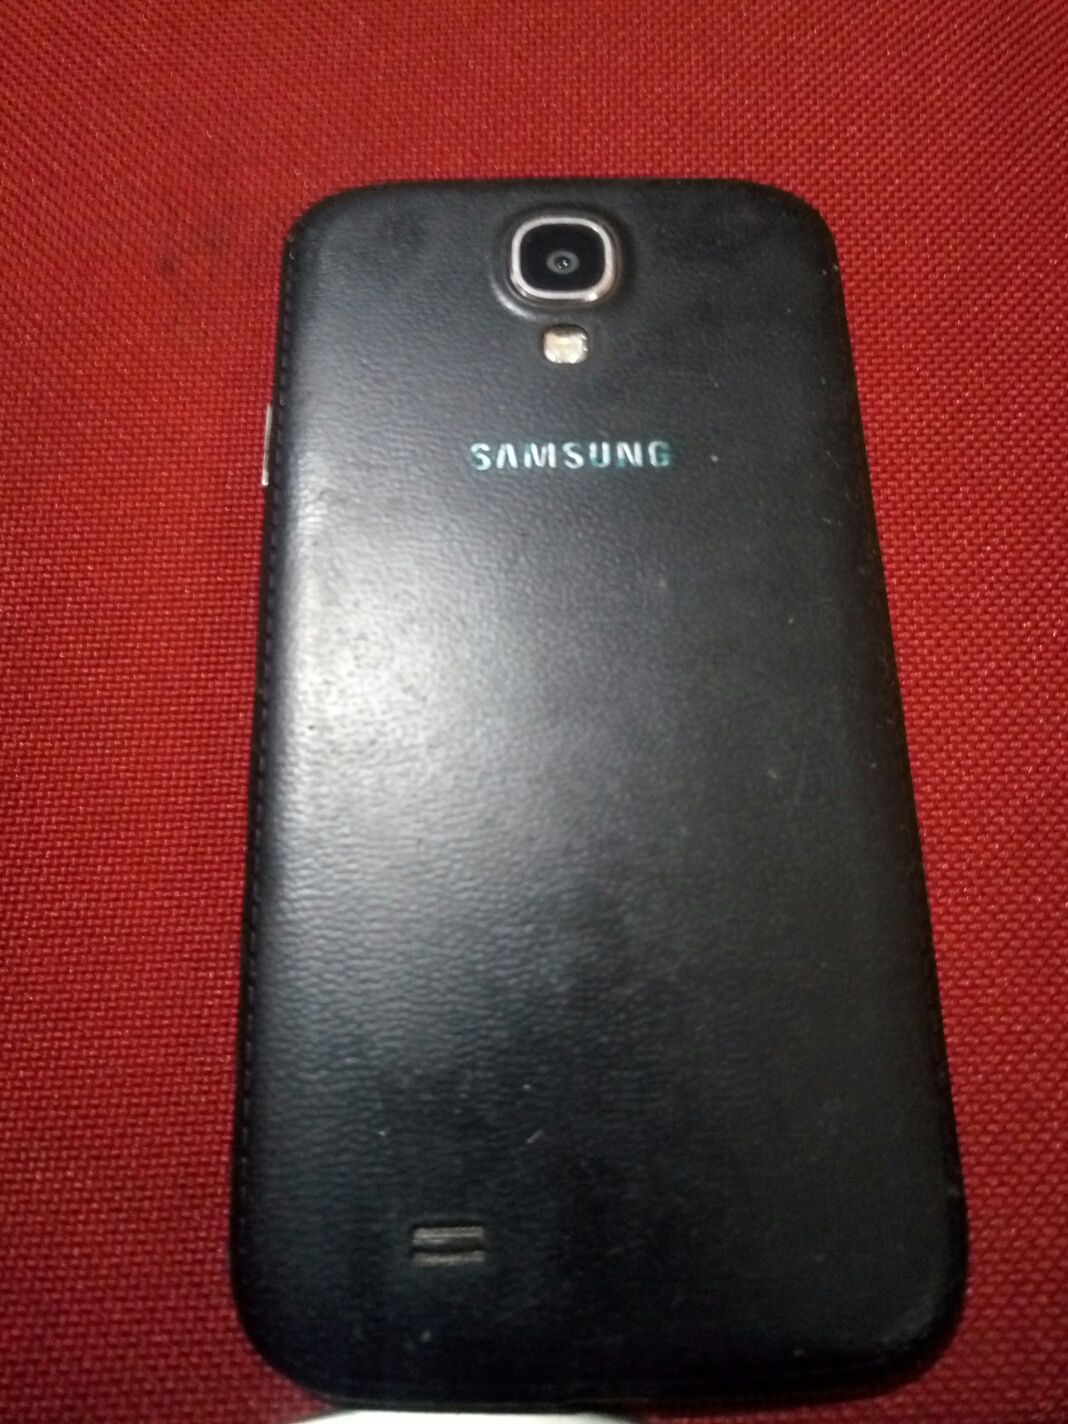 Samsung s4 i9505, 2gb ram, dysplai fisurat.